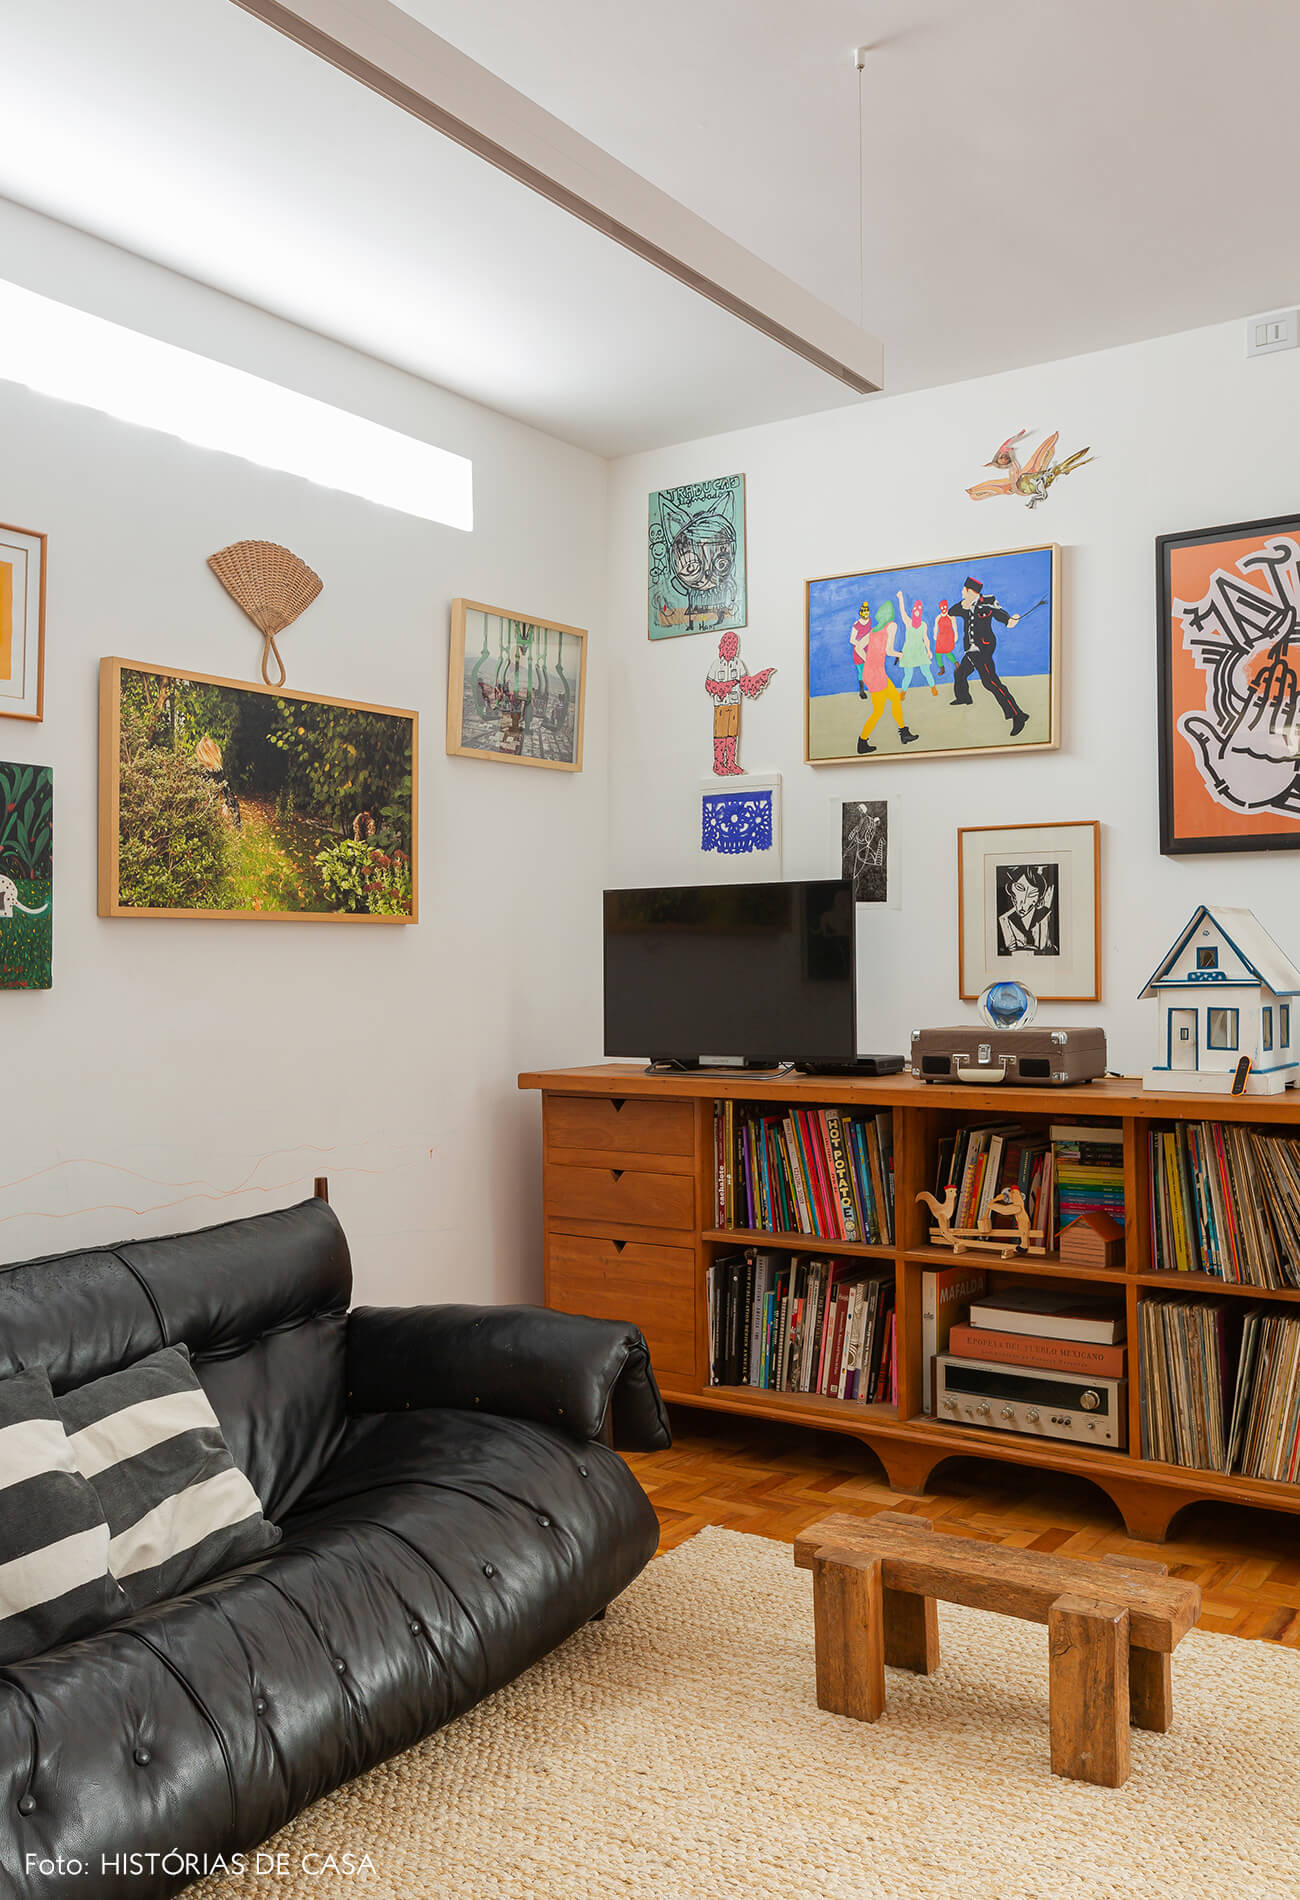 Apartamento reformado, sala com parede de quadros e detalhes coloridos